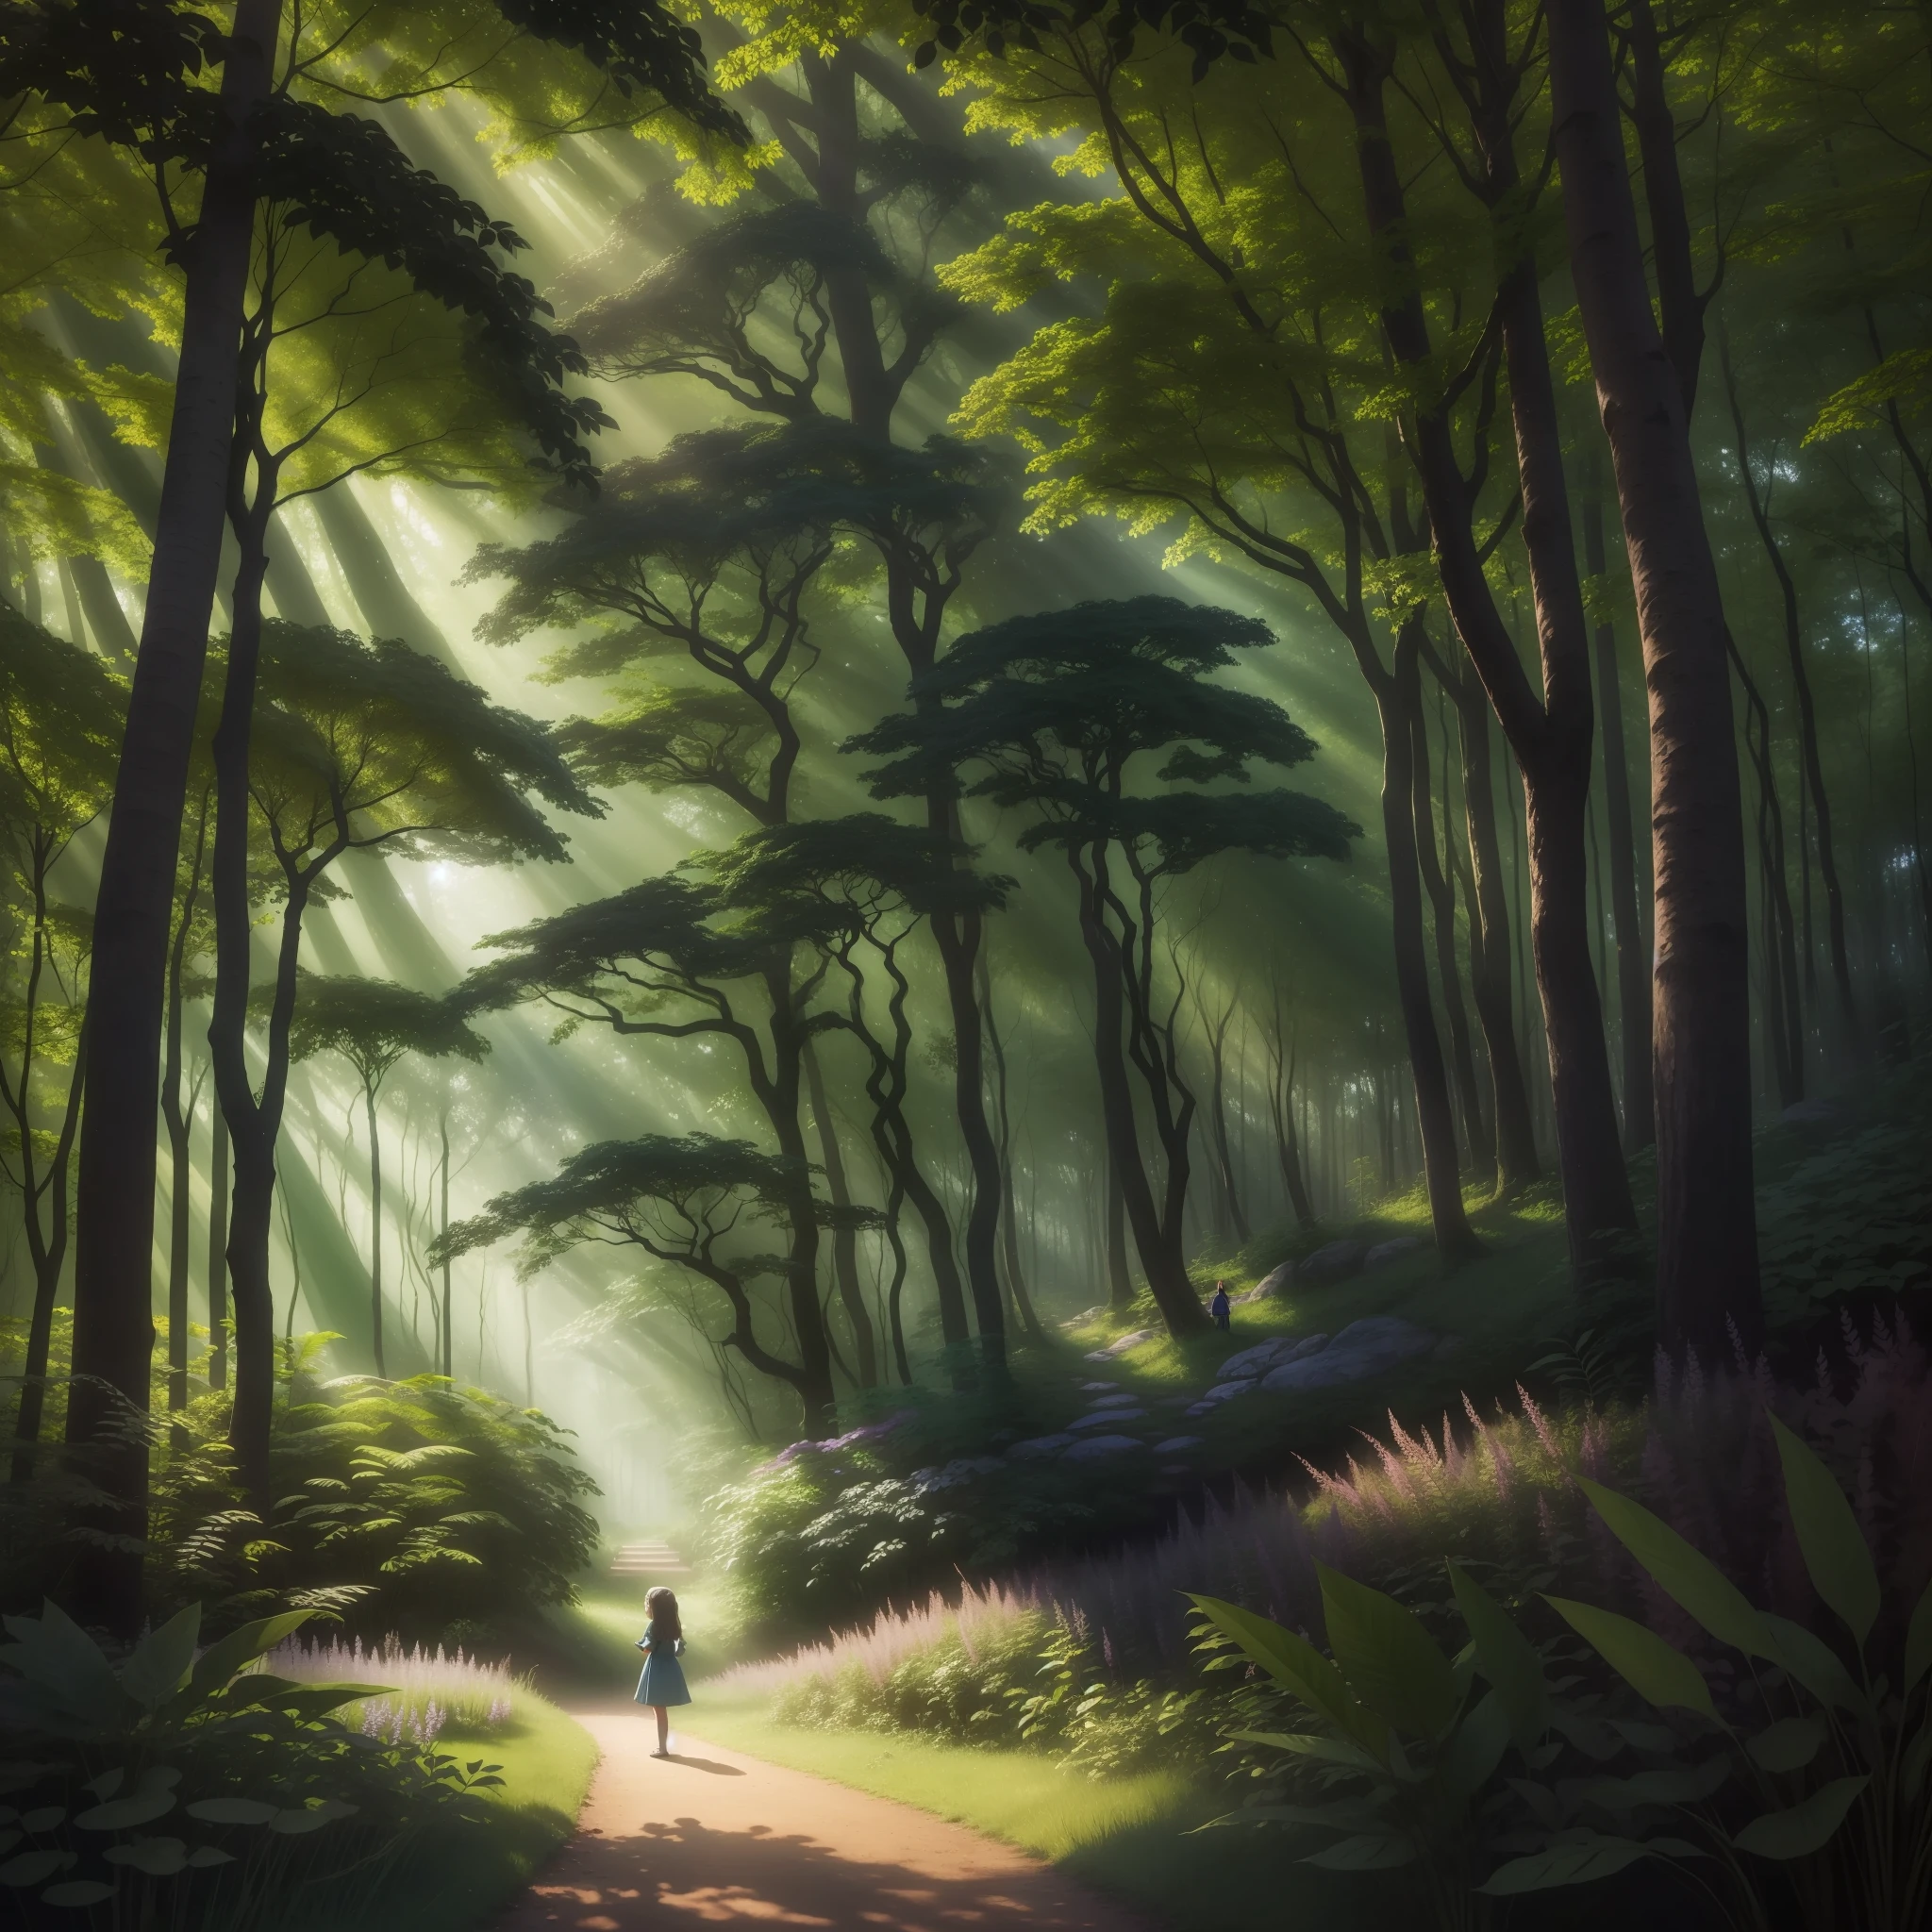 この画像では, 魅惑の森は謎に満ちた魔法のシーンを明らかにします. 背の高い, 緑豊かな木々は、日光を繊細にろ過する緑豊かな天蓋を形成します, 静かで居心地の良い環境づくり. 森の中心に, 勇敢な人が巨人の上に立っている